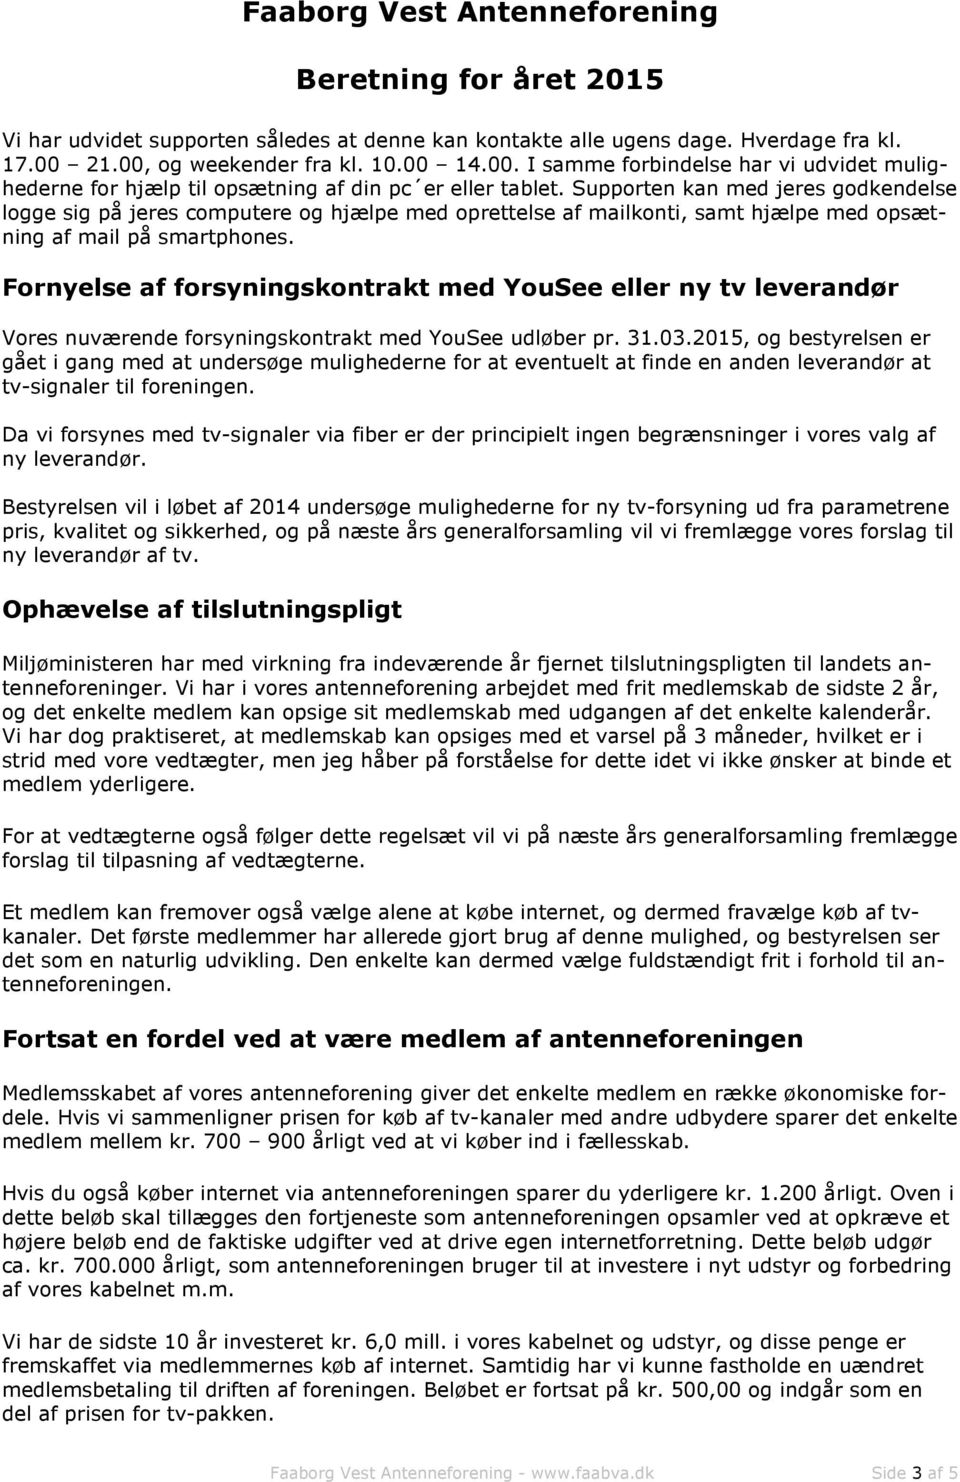 Faaborg Vest Antenneforening. Beretning for året PDF Gratis download